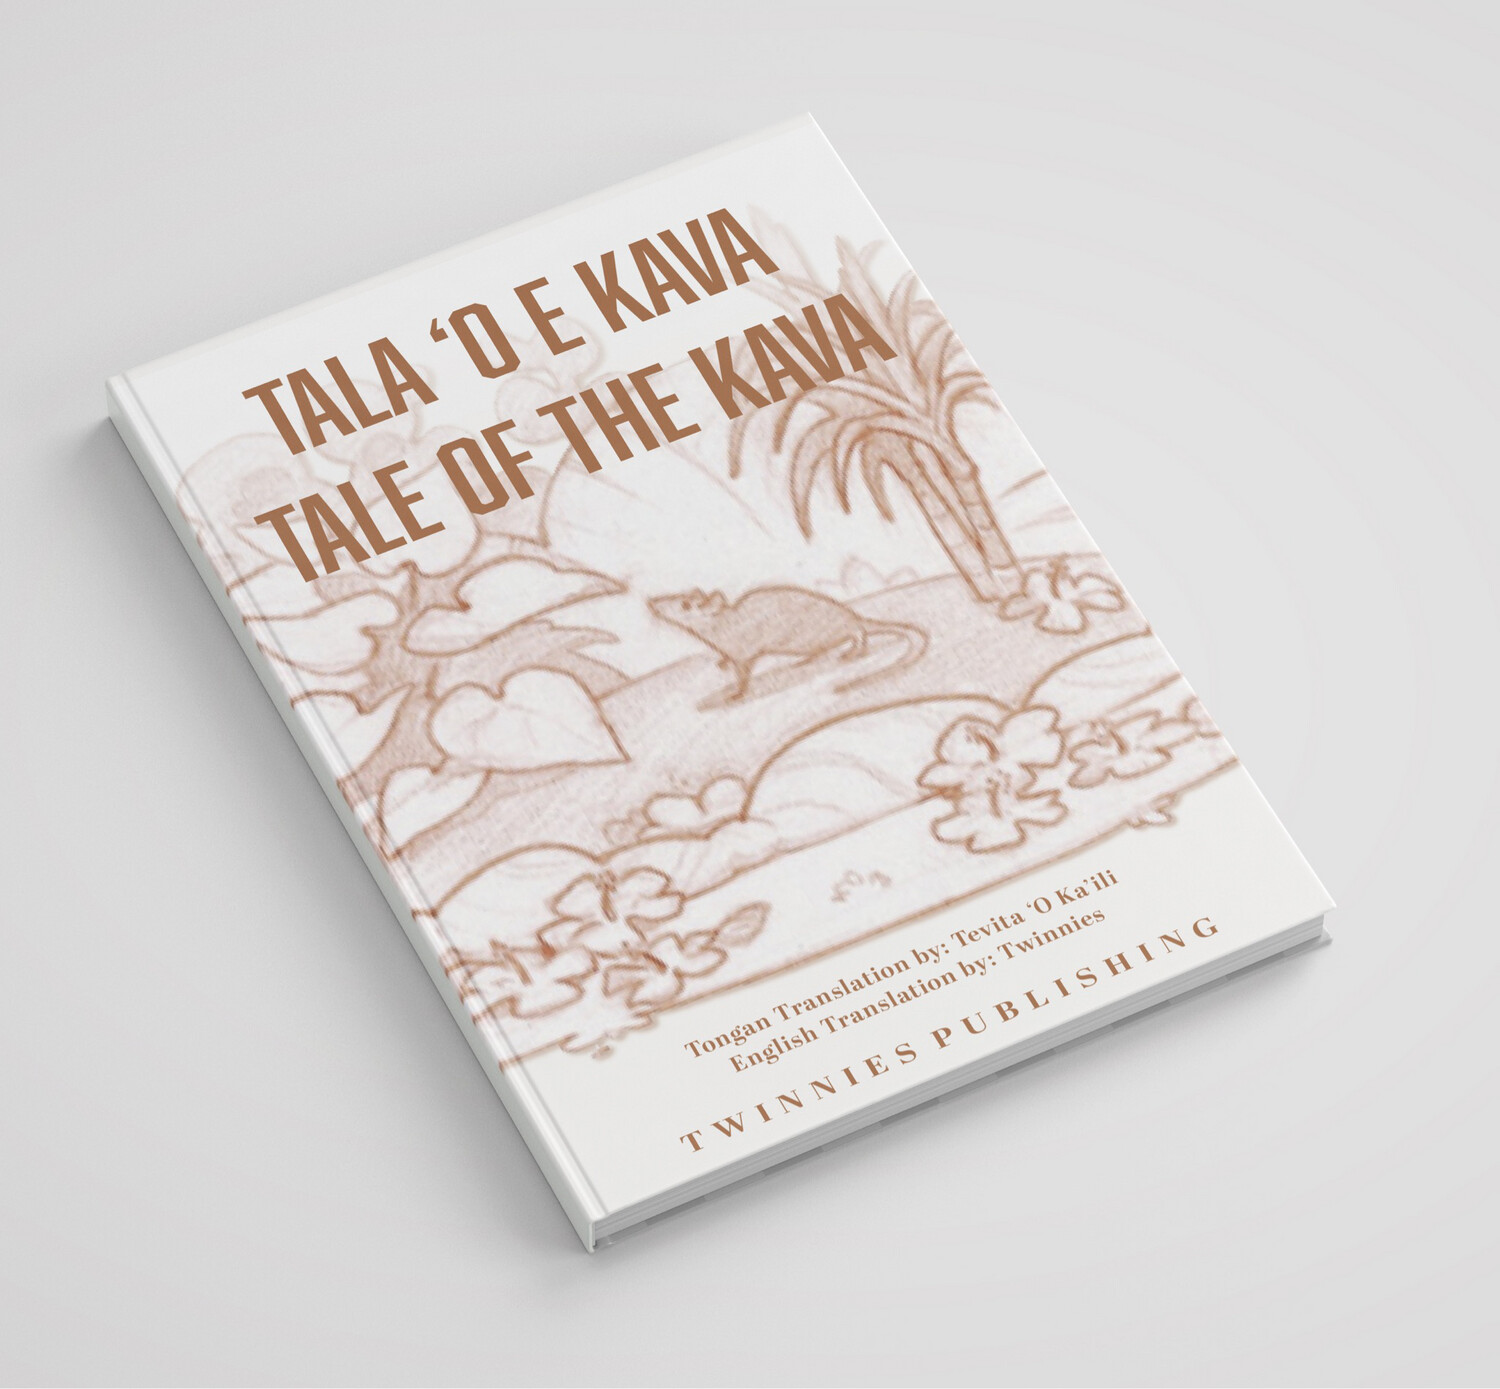 TALA ‘O E KAVA: TALE OF THE KAVA